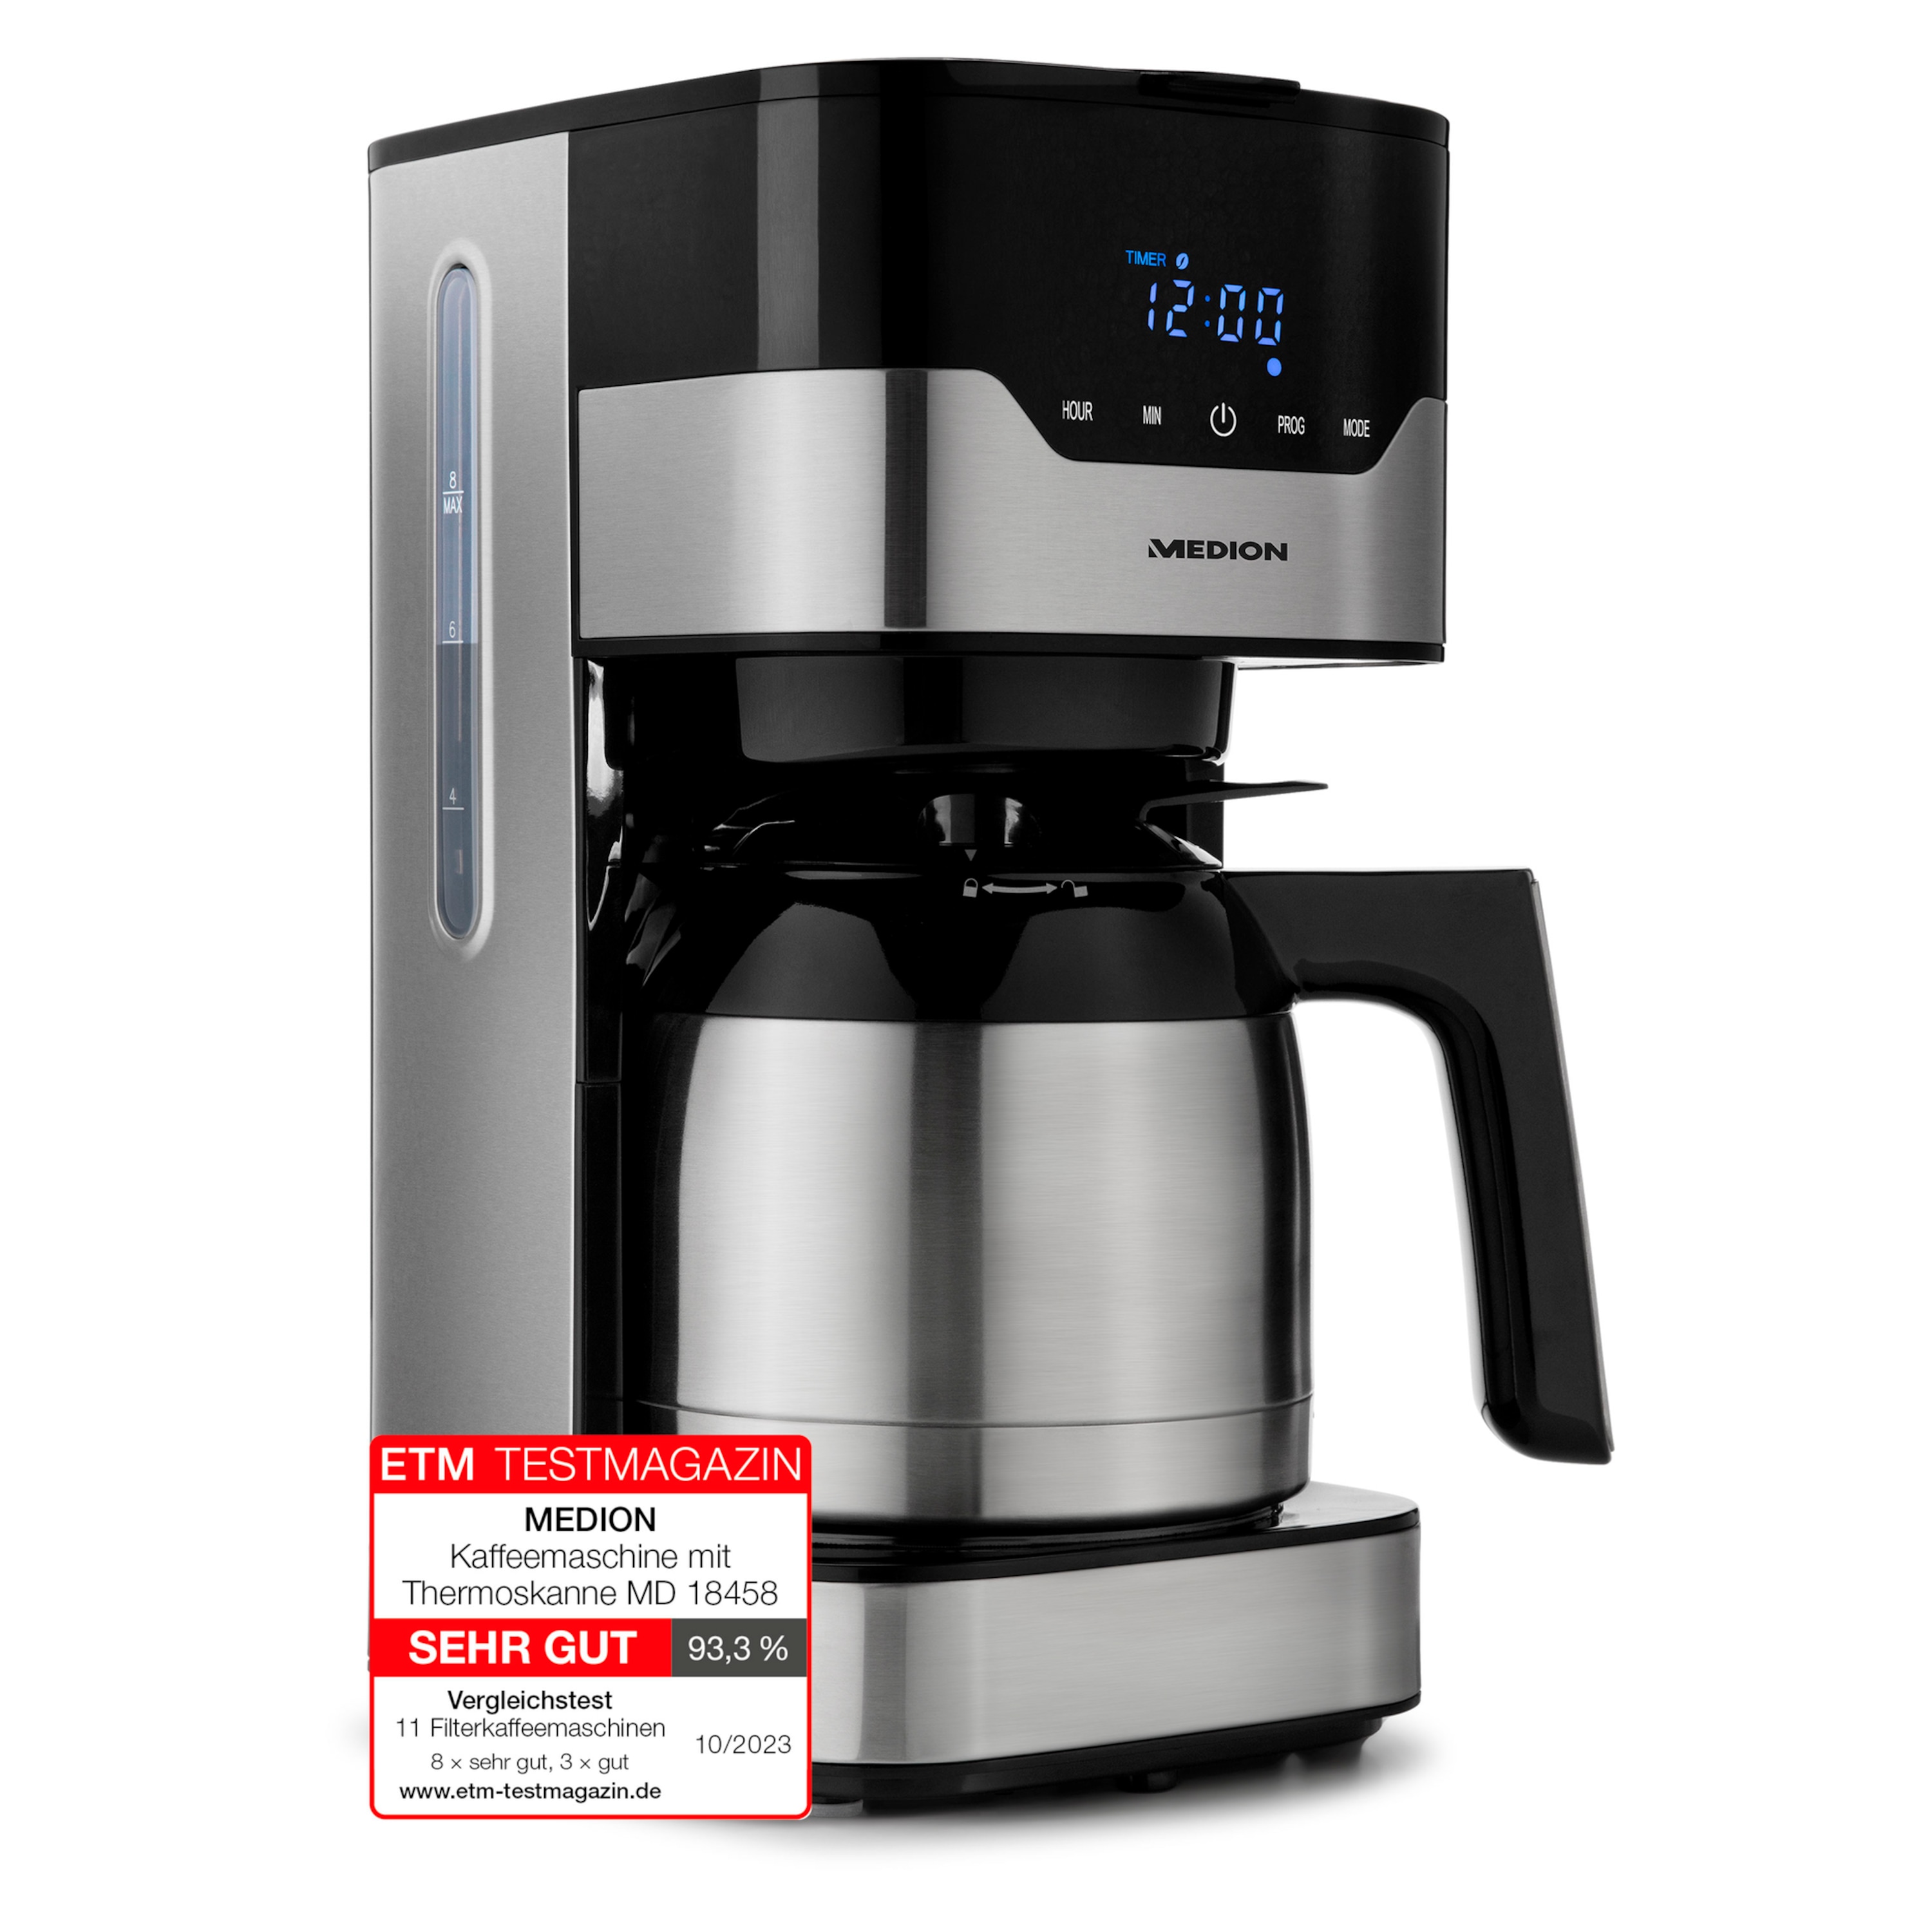 MEDION Kaffeemaschine mit Thermoskanne MD 18458, Timer-Funktion, Tropf-Stopp, 900 Watt, 1,1 Liter Fassungsvermögen, Arom